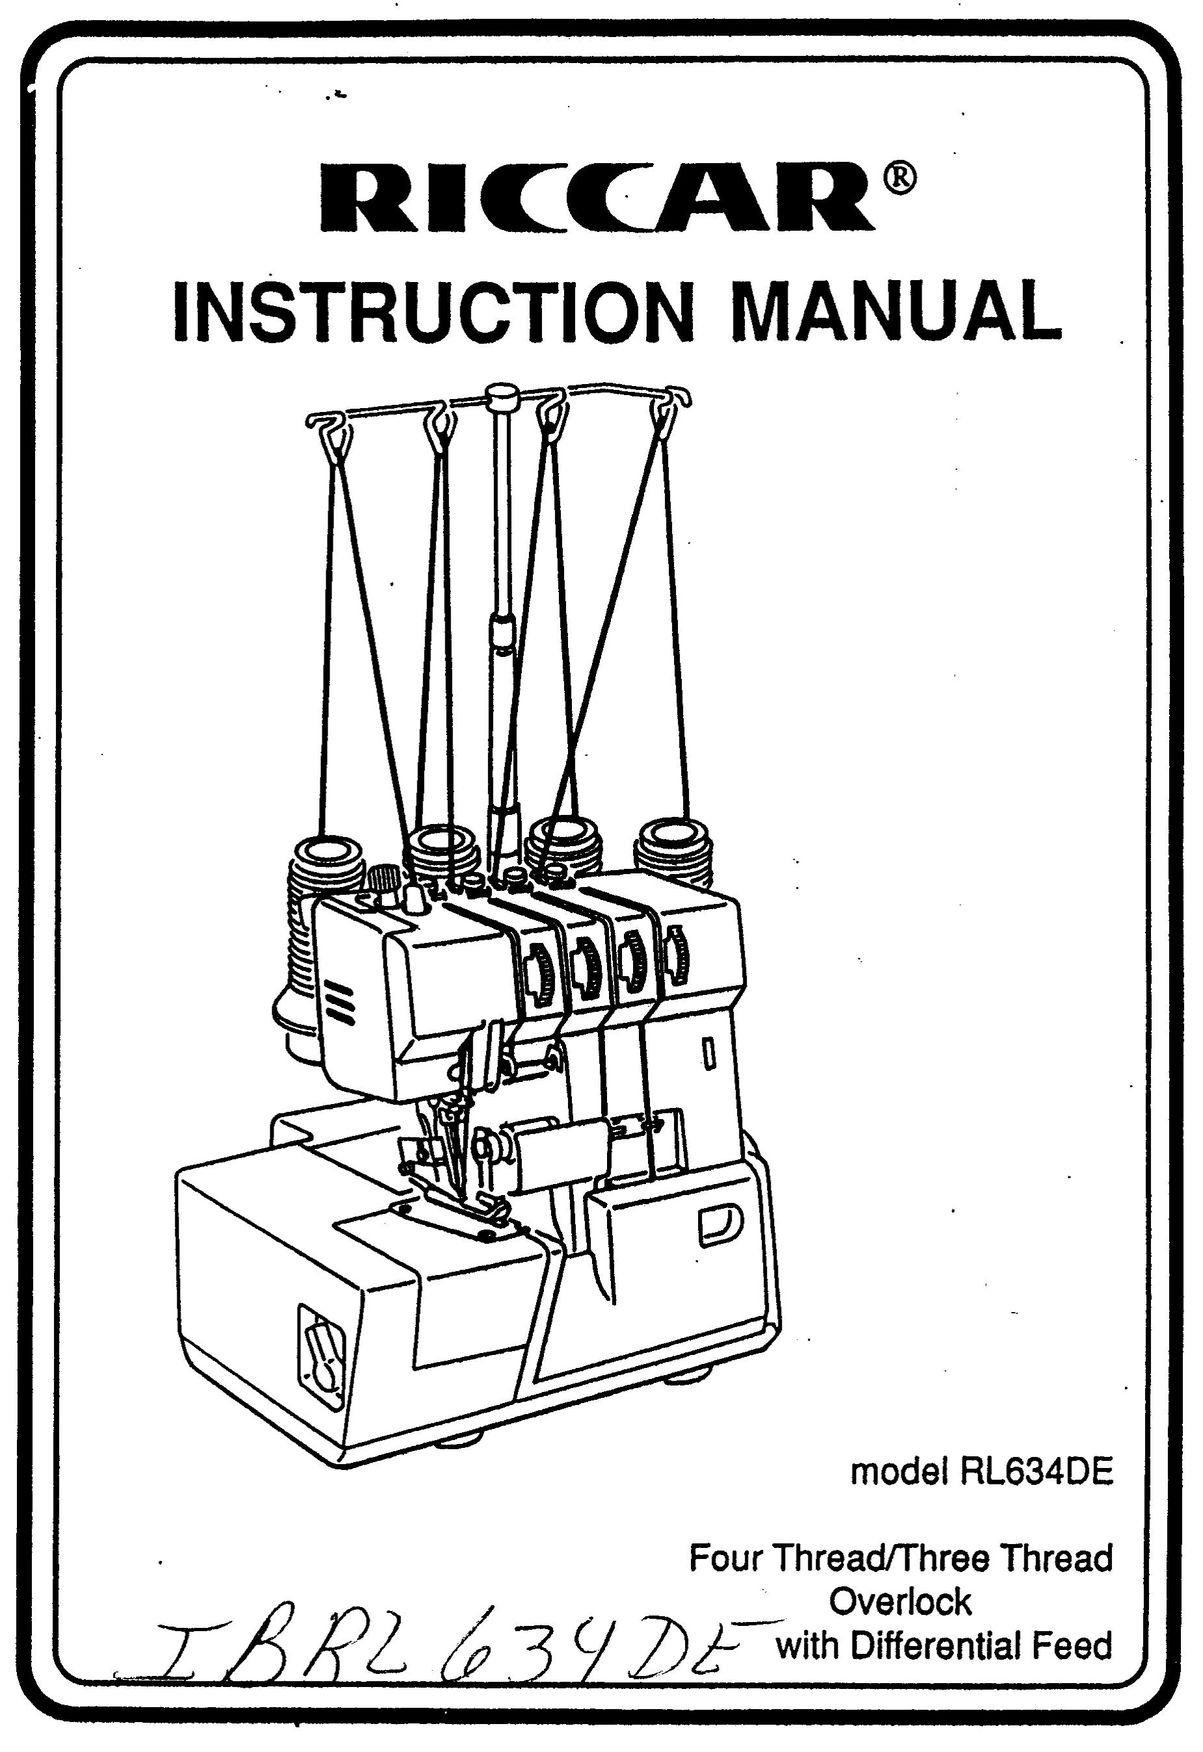 Riccar RL634DE Sewing Machine User Manual